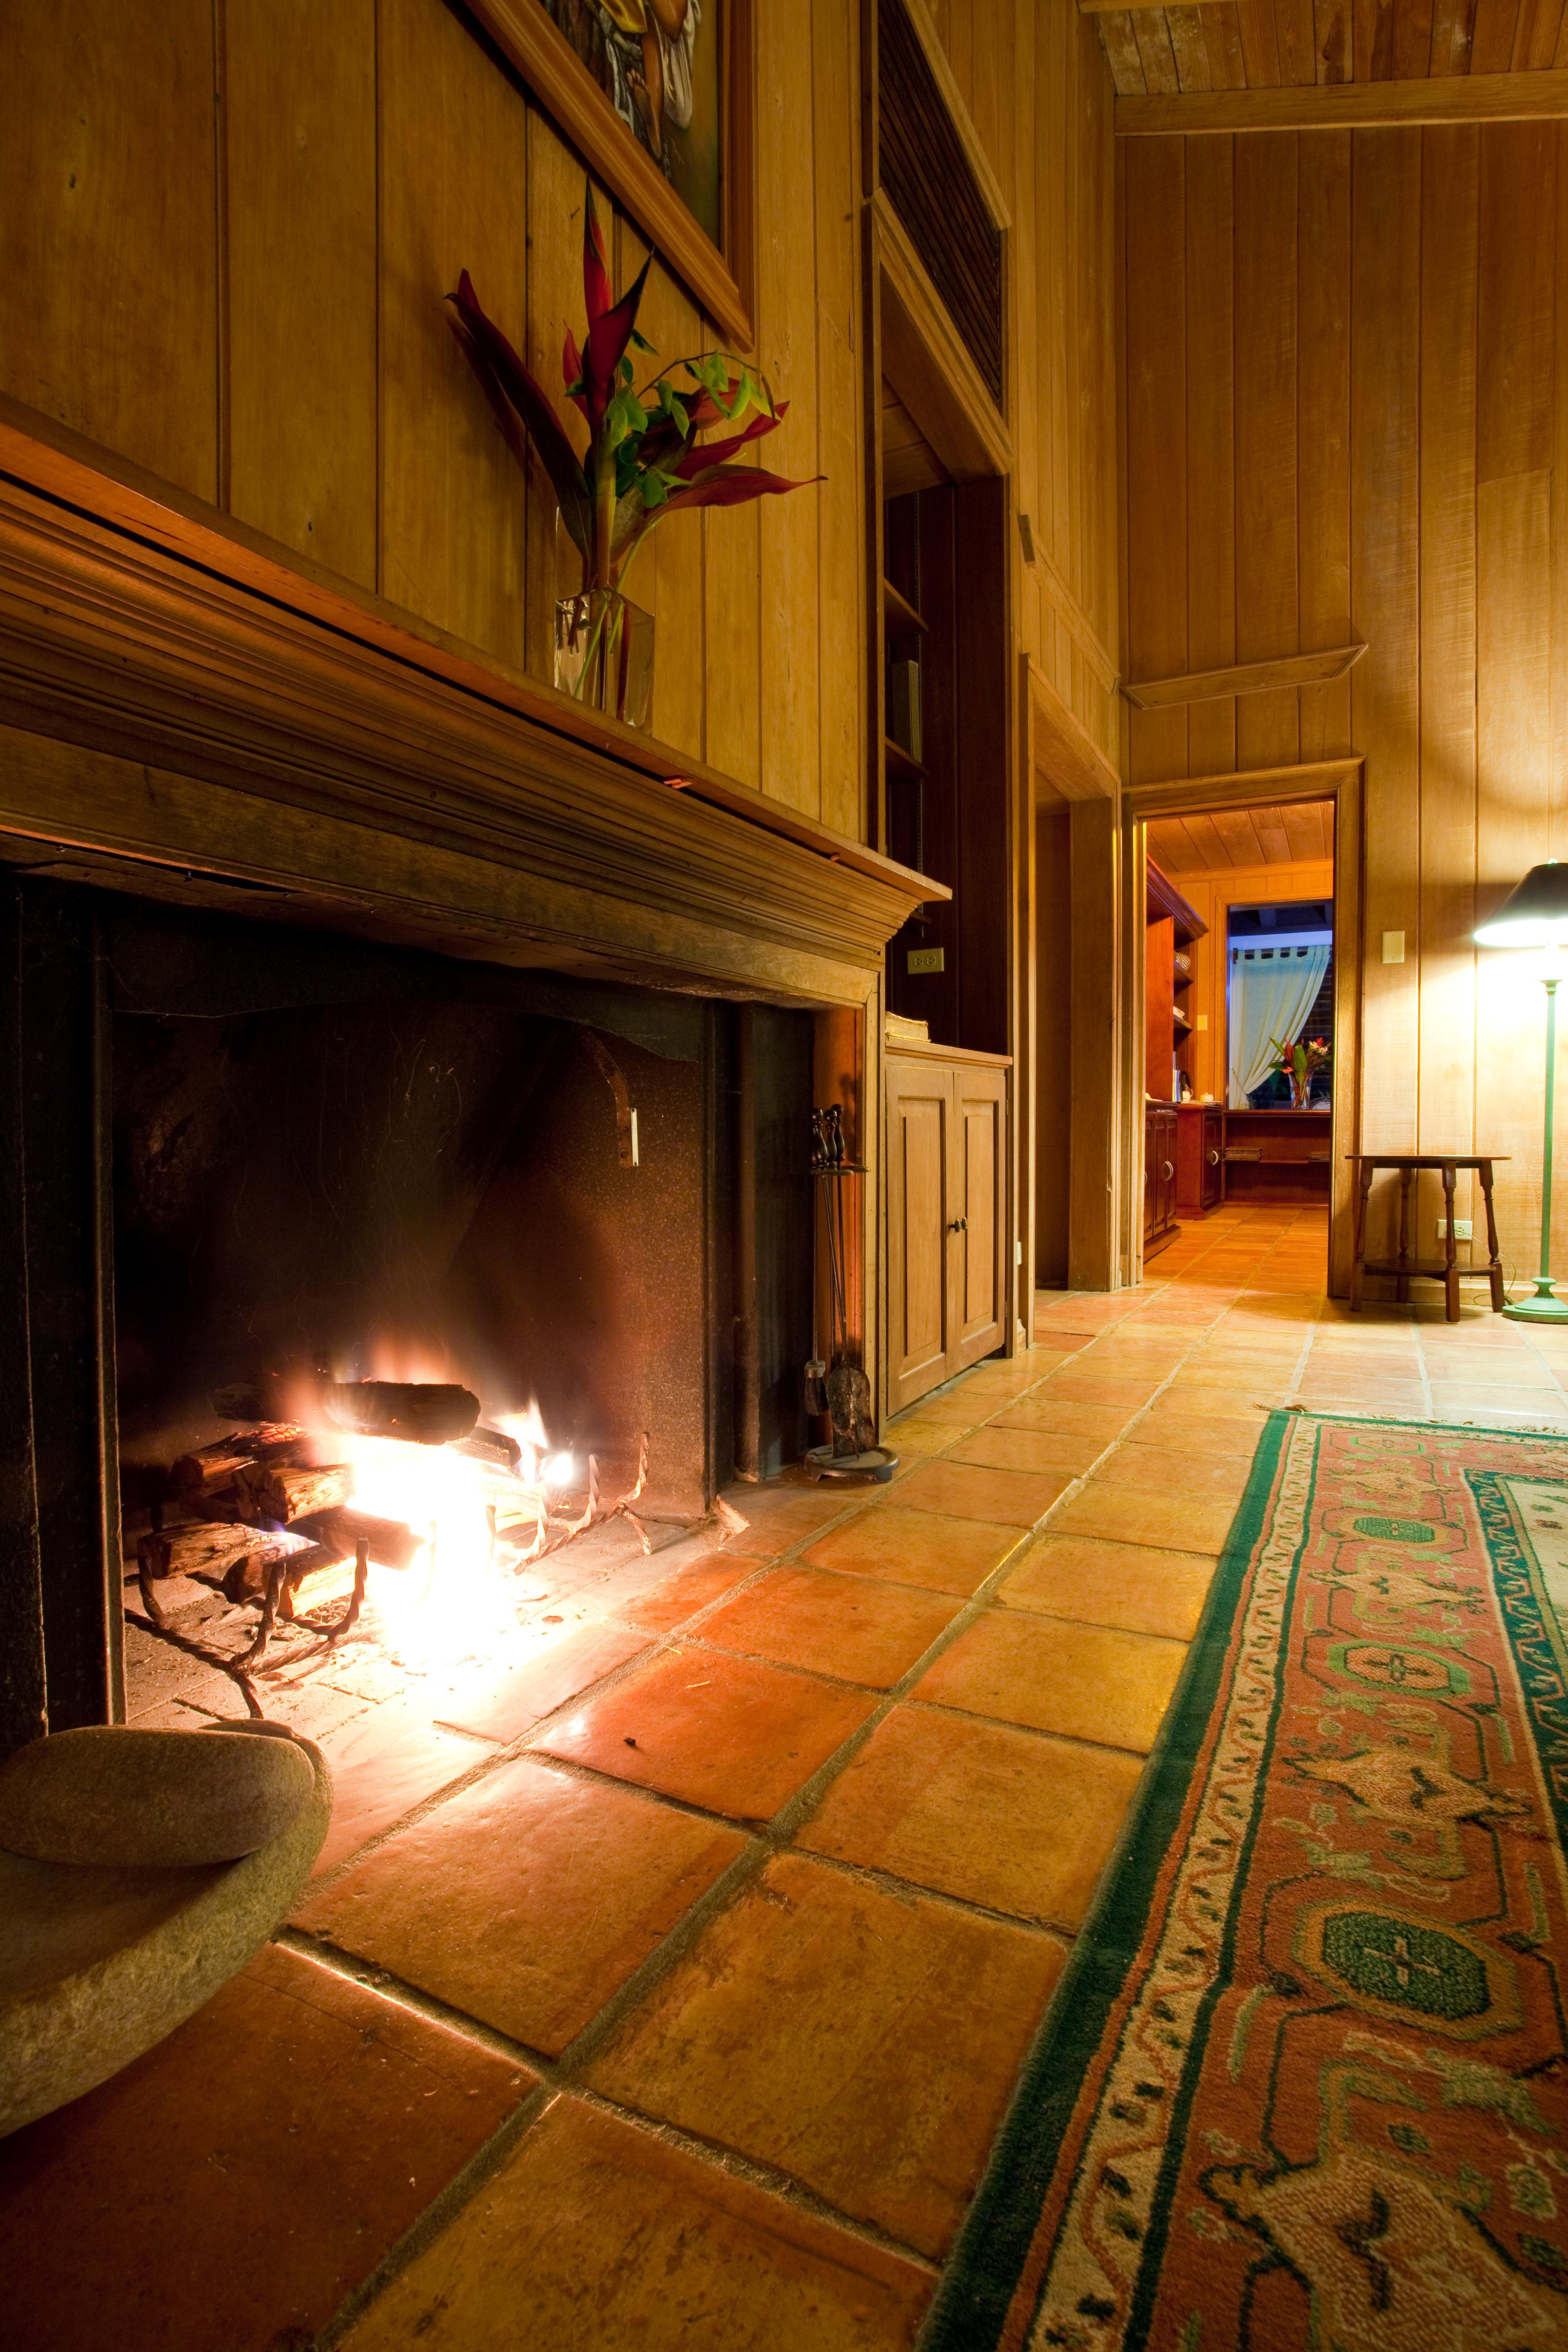 Hidden Valley Wilderness Lodge Blancaneaux Exterior photo